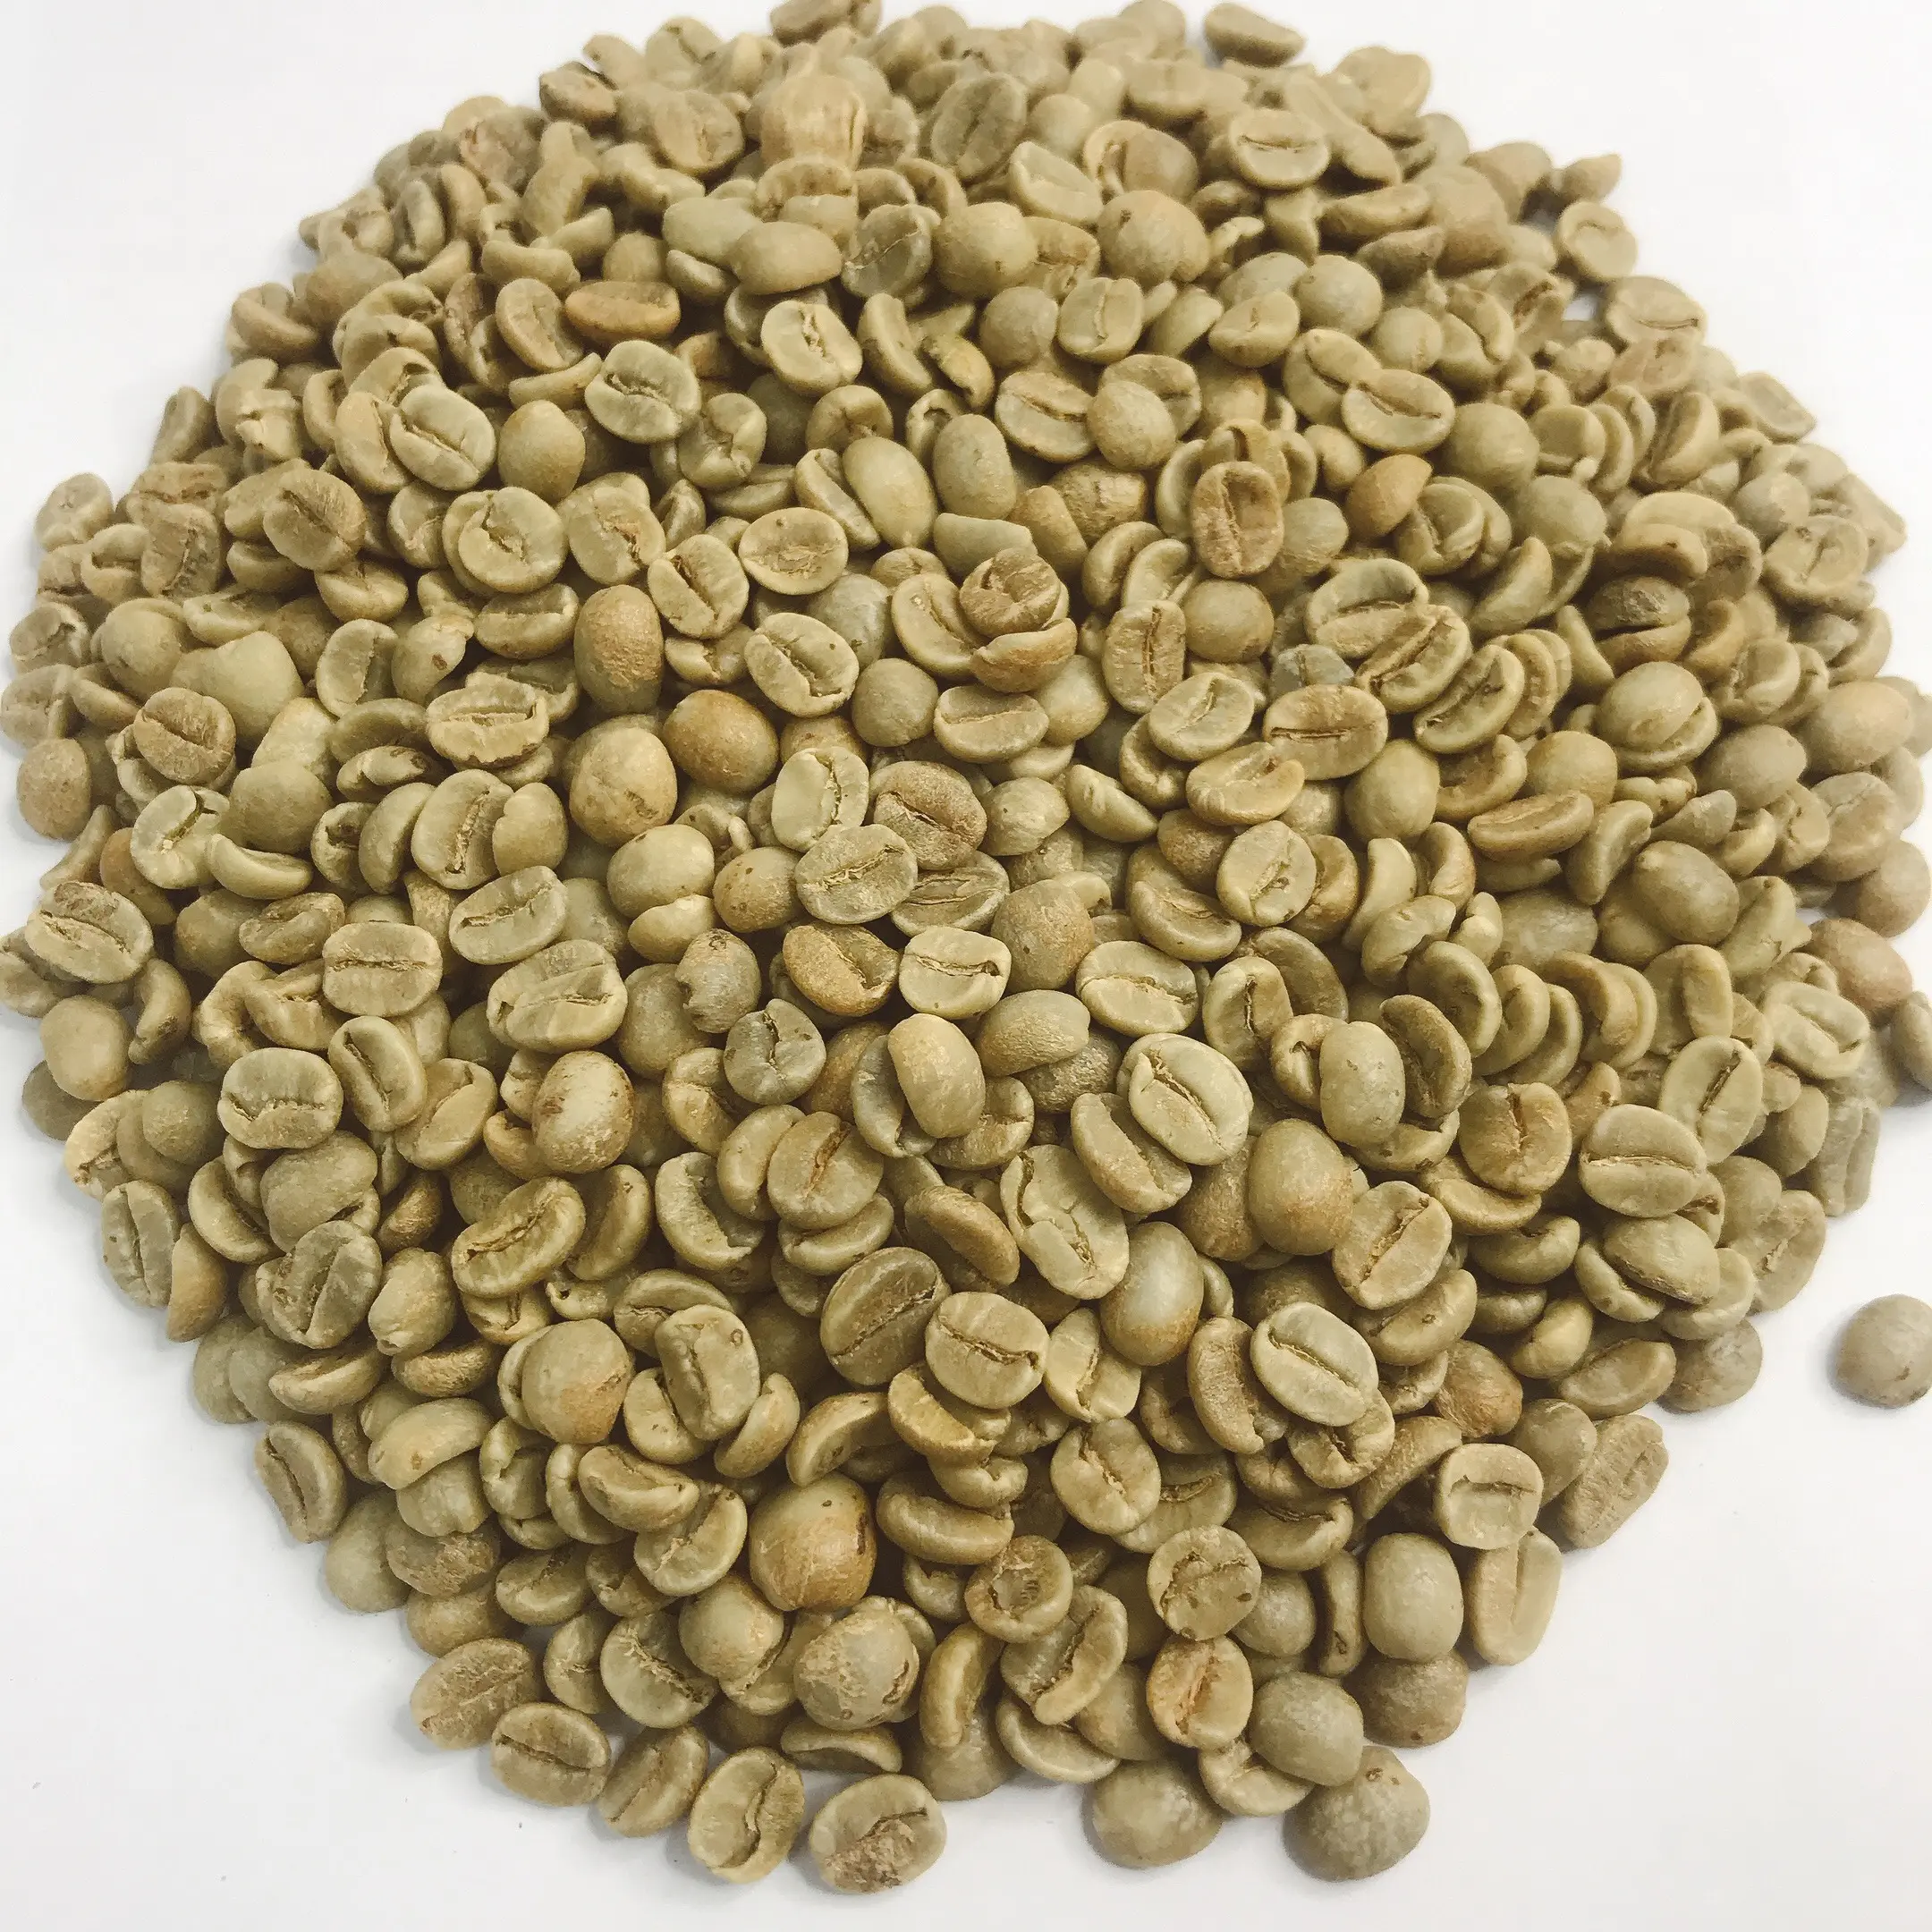 DETECH kahve Premium kavrulmuş kahve-yeşil Arabica kahve çekirdeği Viet Nam yüksek kalite 100% doğal hazır gemi etrafında th